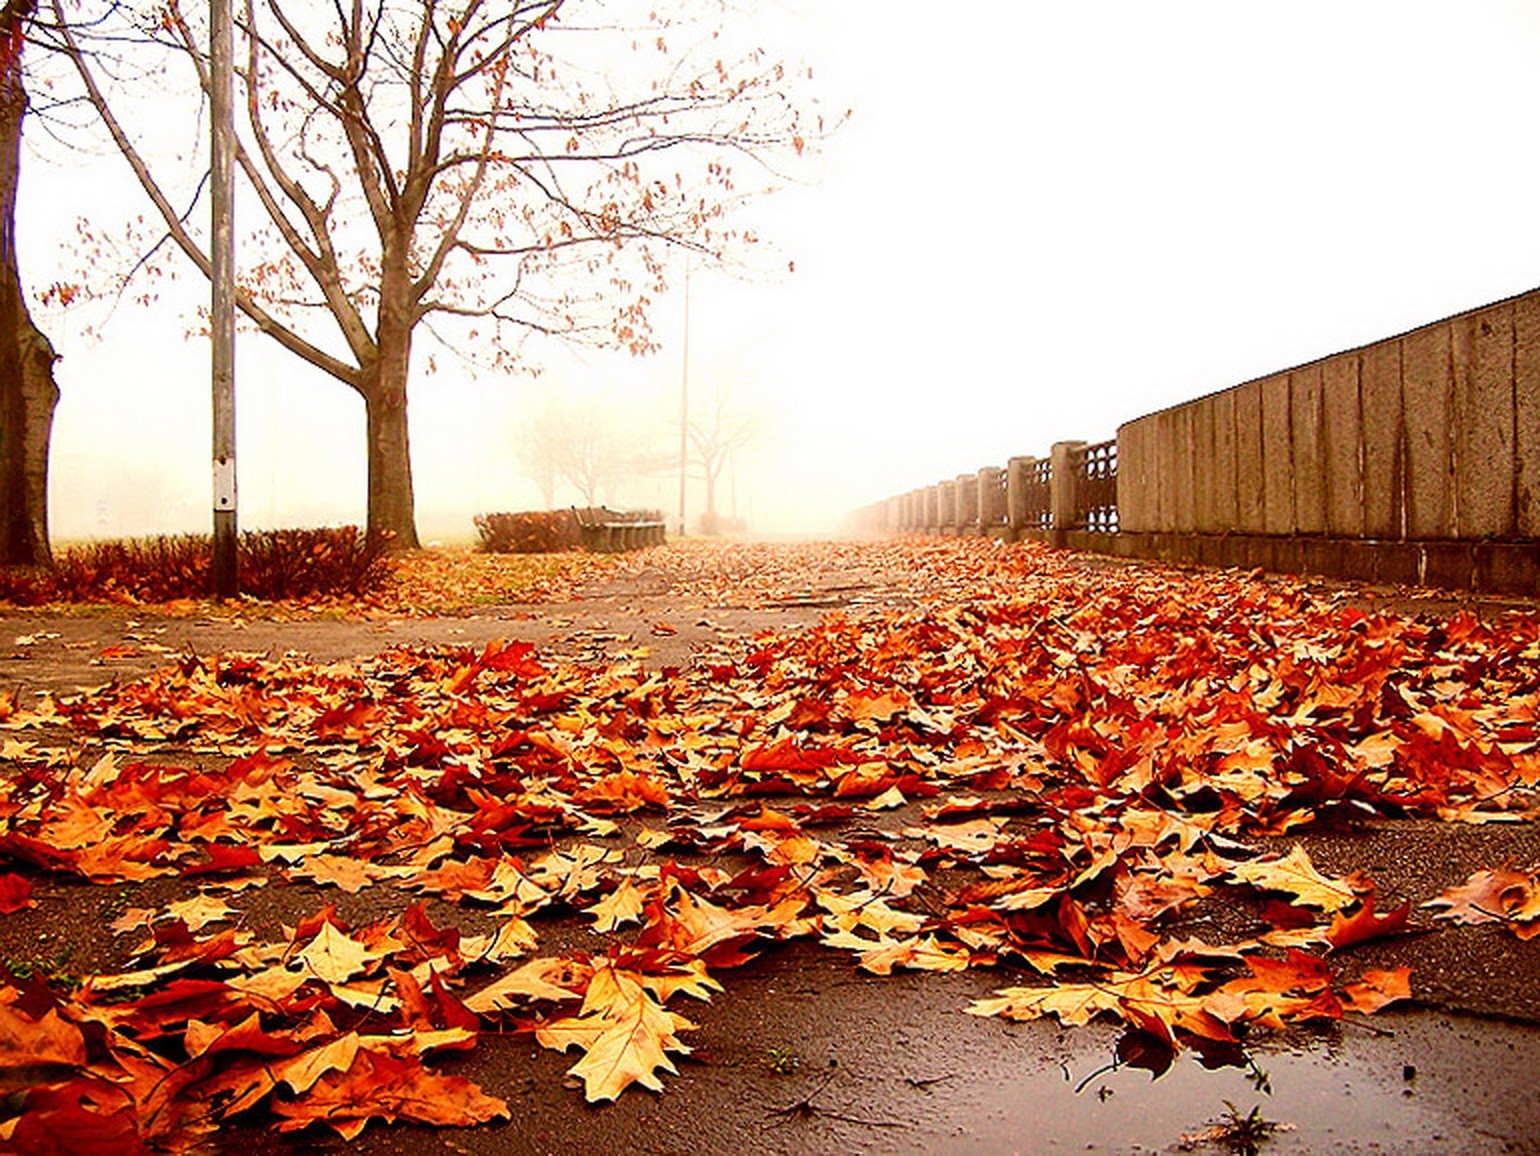 Понравилась осень. Ковер в осенних мотивах. Октябрь застилает землю. Фото осень – это все цвета светофора в одном парке….